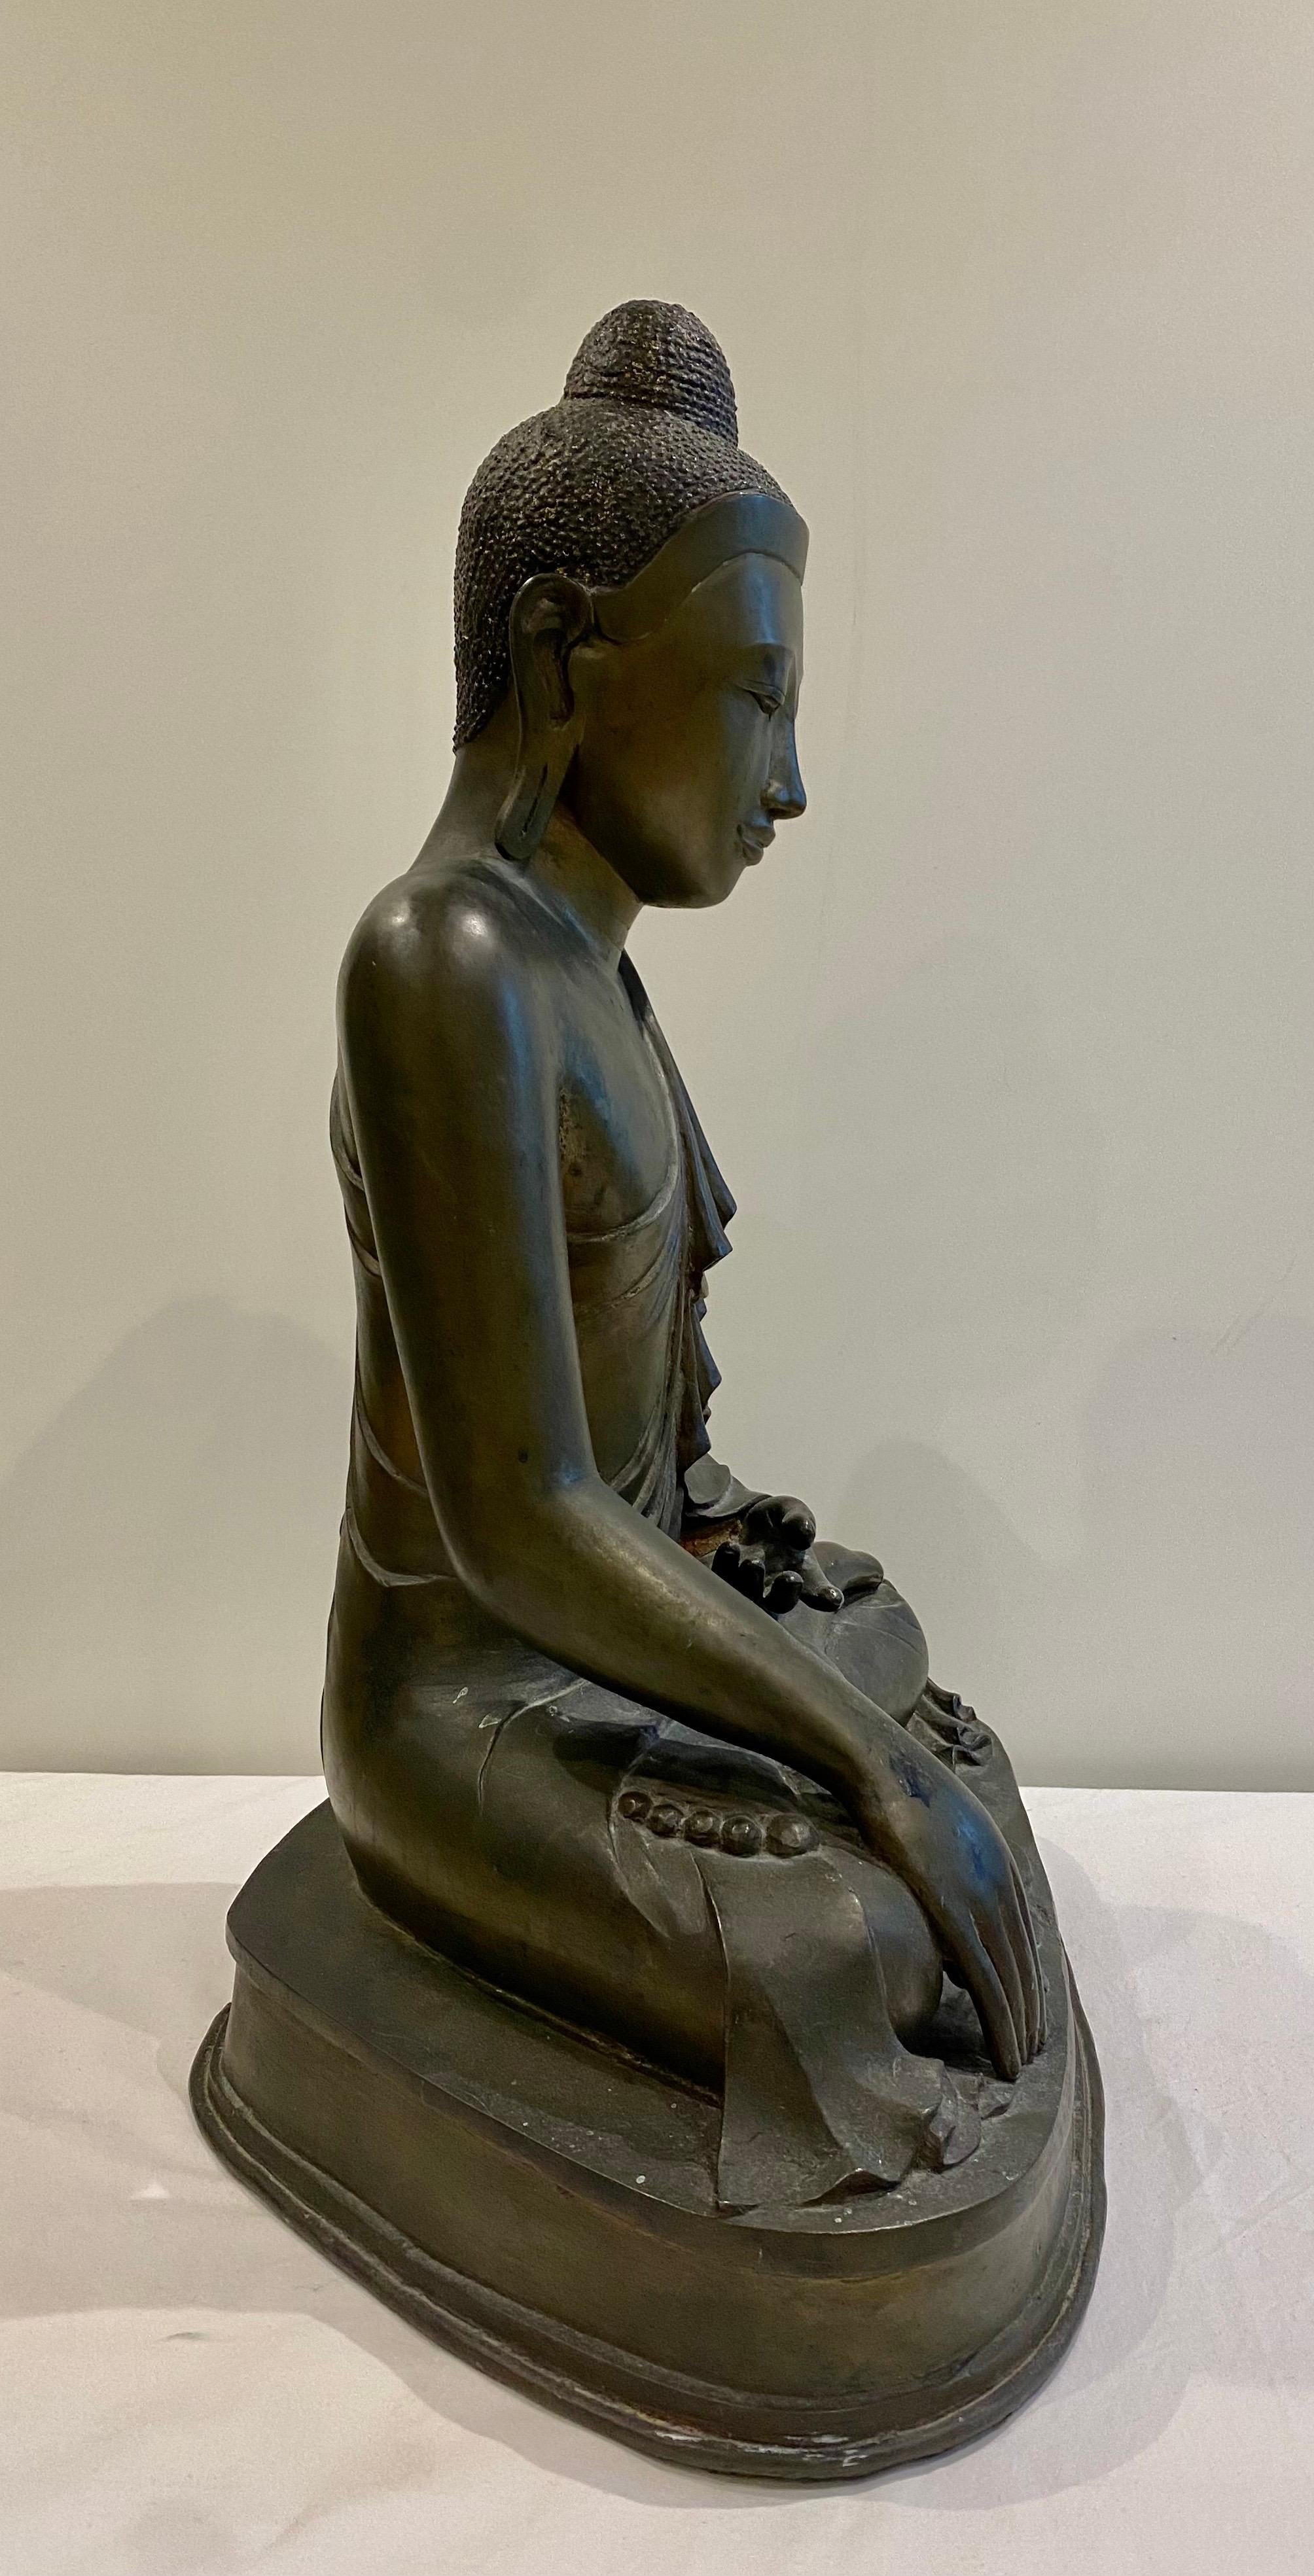 Bouddha assis en bronze de grande taille, d'époque Mandalay, 19e siècle,
Le Bouddha est assis, la main droite abaissée en bhumisparsimudra et la main gauche posée sur les genoux.
Ce produit a été fabriqué en Birmanie vers les années 1880.
La